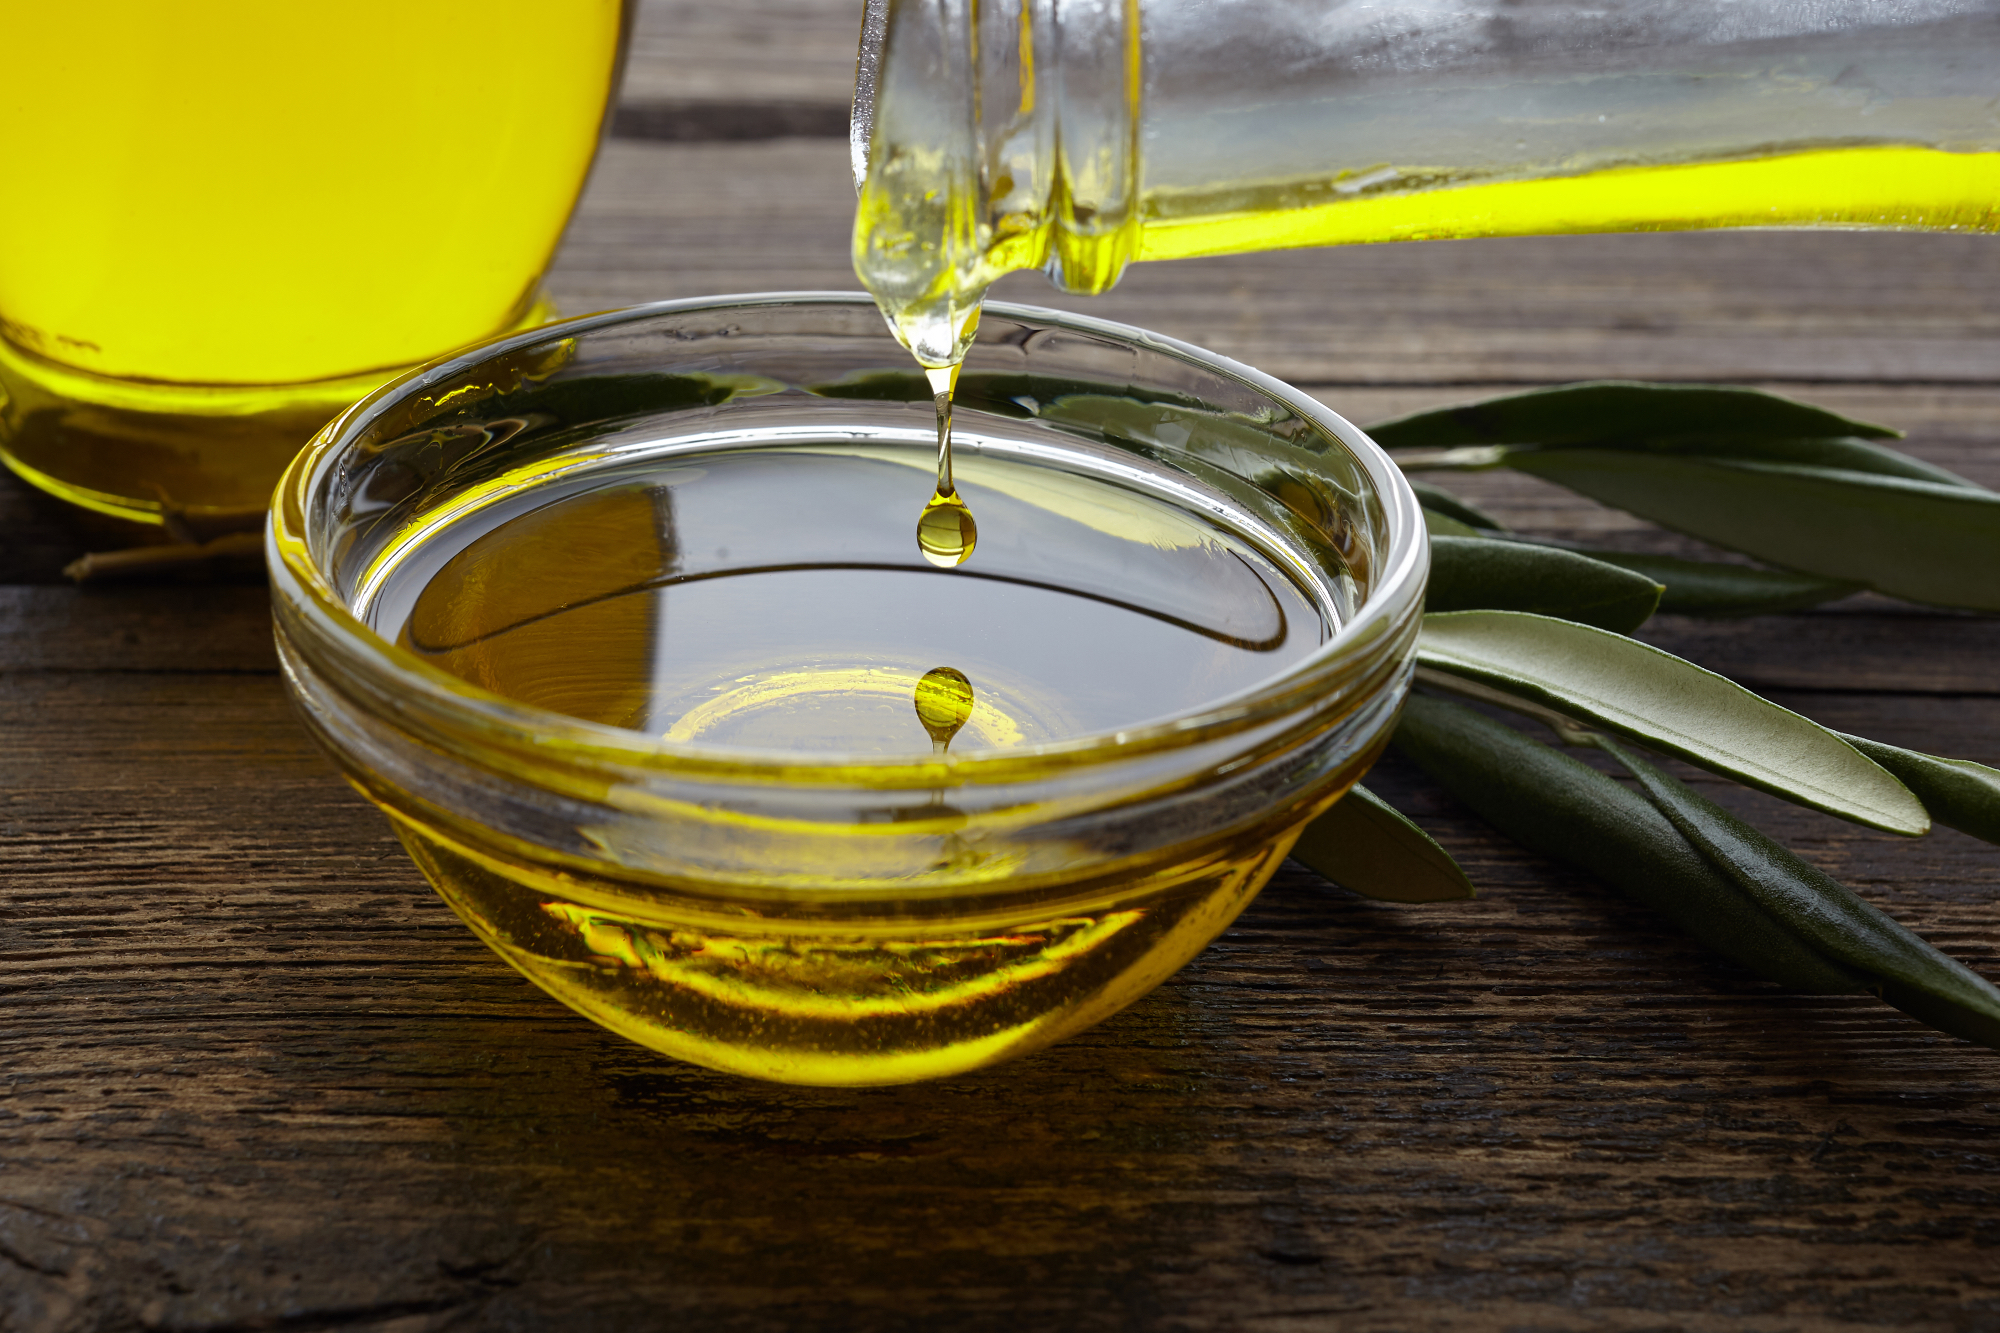 Iz kot izvira Grško olivno olje in kaj je